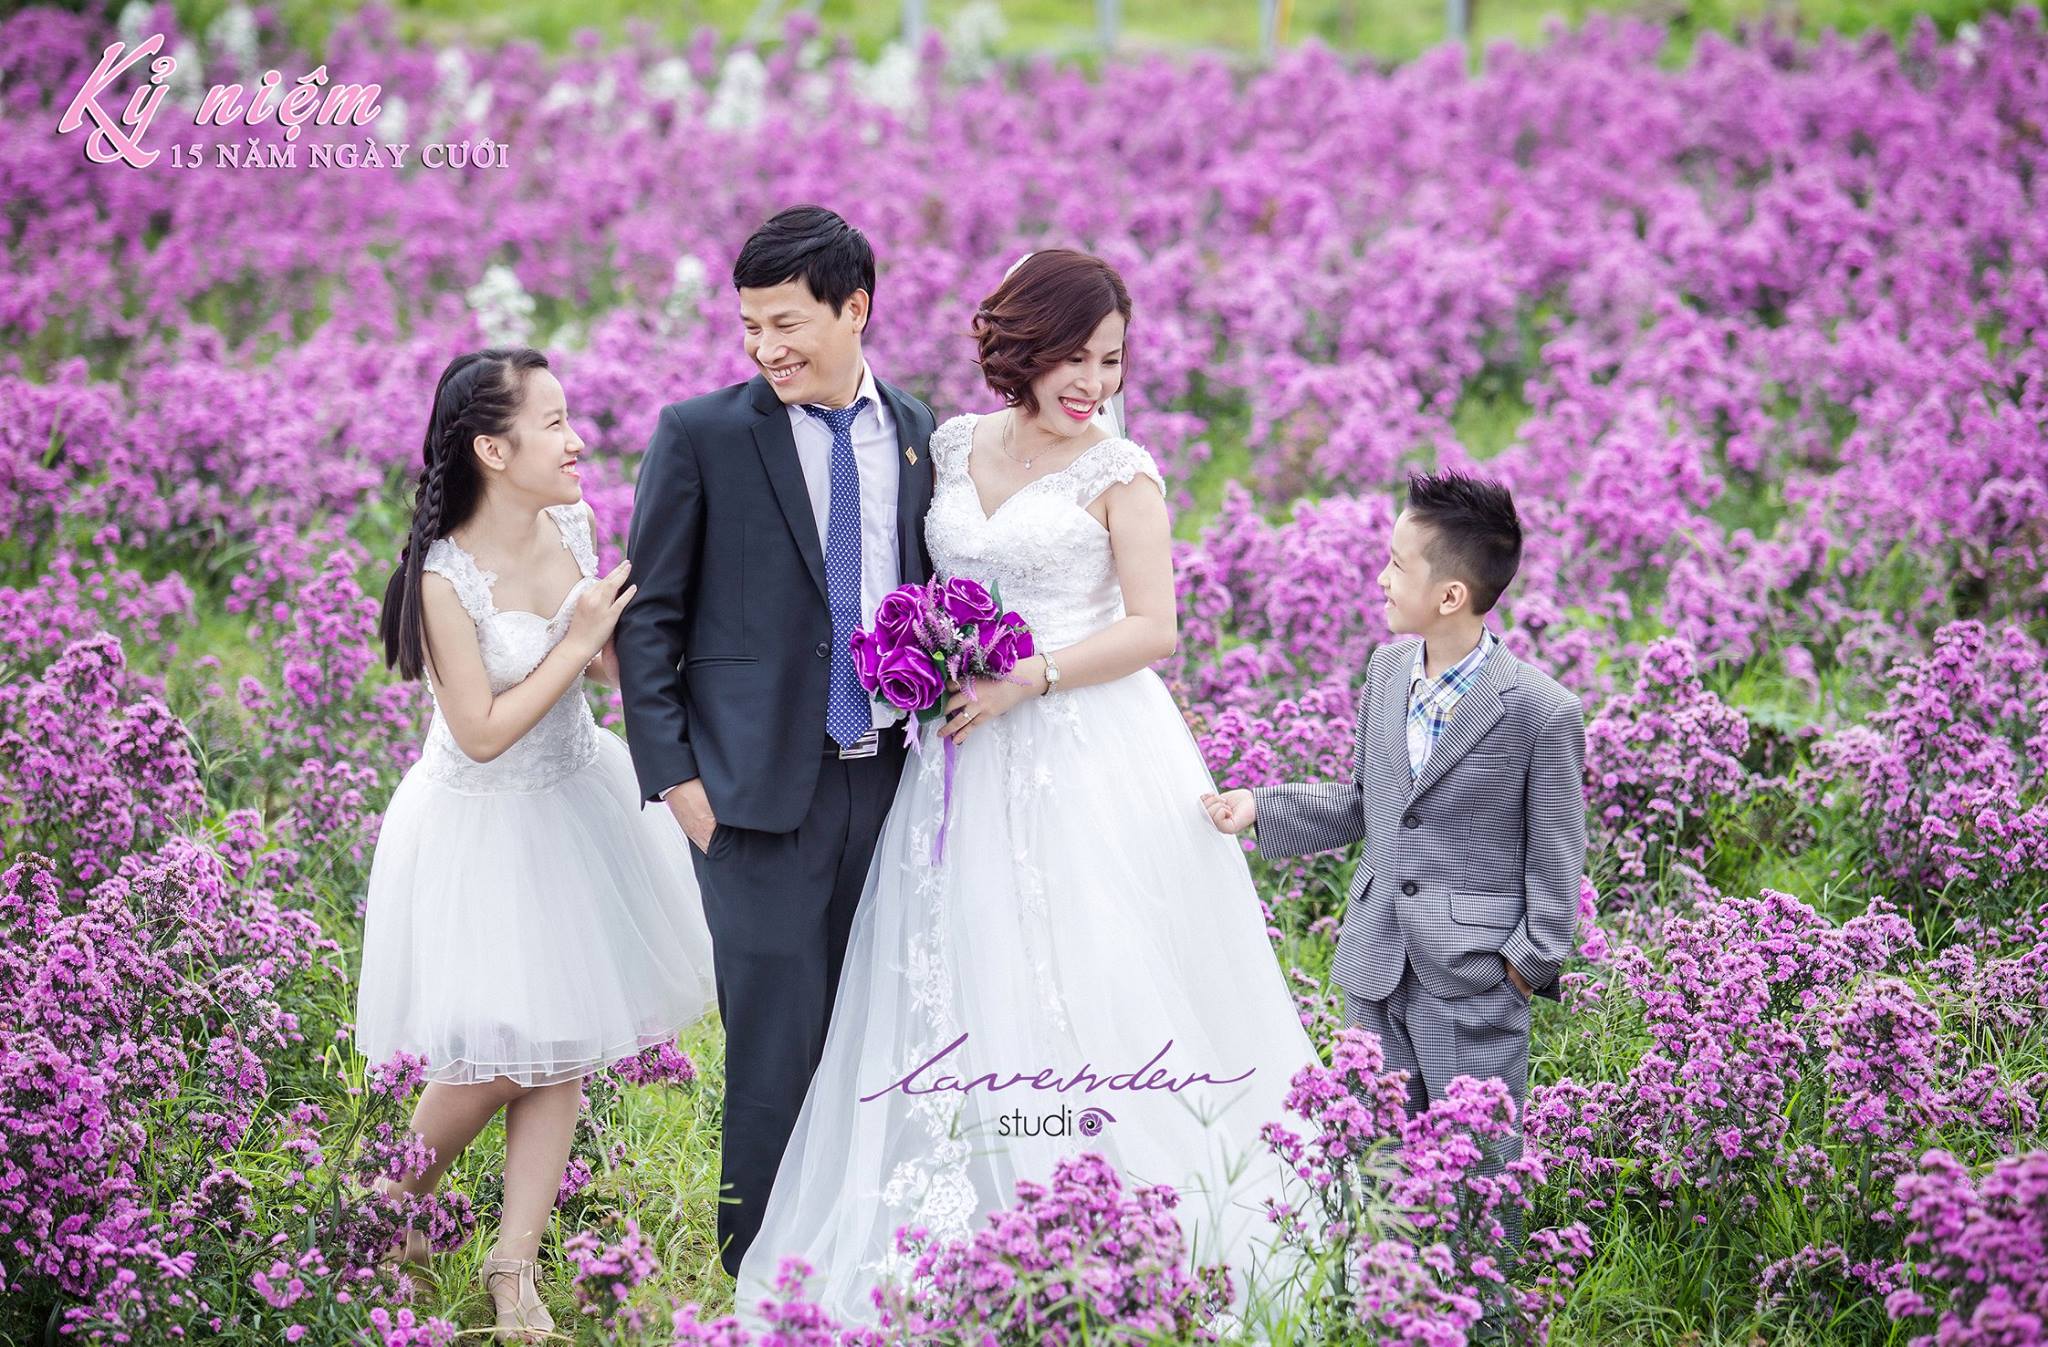 Bạn muốn có những bức ảnh đẹp nhất cùng gia đình mình tại Hà Nội? Hãy đến với Lavender studio chụp ảnh gia đình đẹp! Với không gian sang trọng, màu sắc tươi sáng và ánh sáng đẹp nhất, chúng tôi cam kết sẽ mang đến cho bạn những bức ảnh đẹp nhất với giá thành hợp lý.